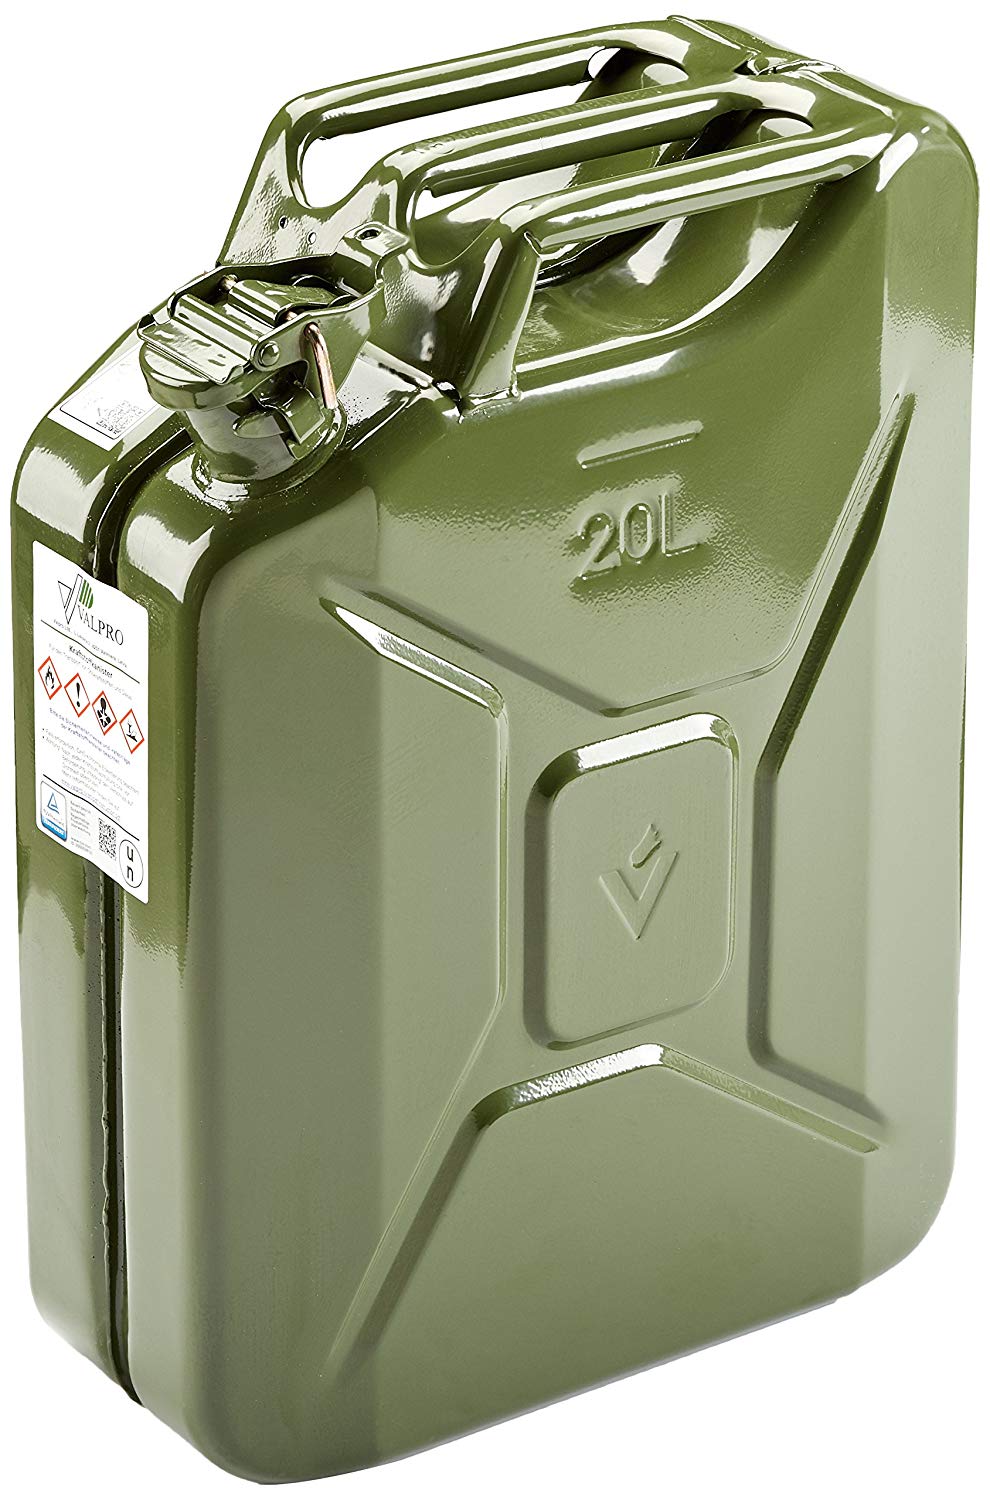 Oxid7® Metall Benzinkanister Kraftstoffkanister olivgrün 20 Liter